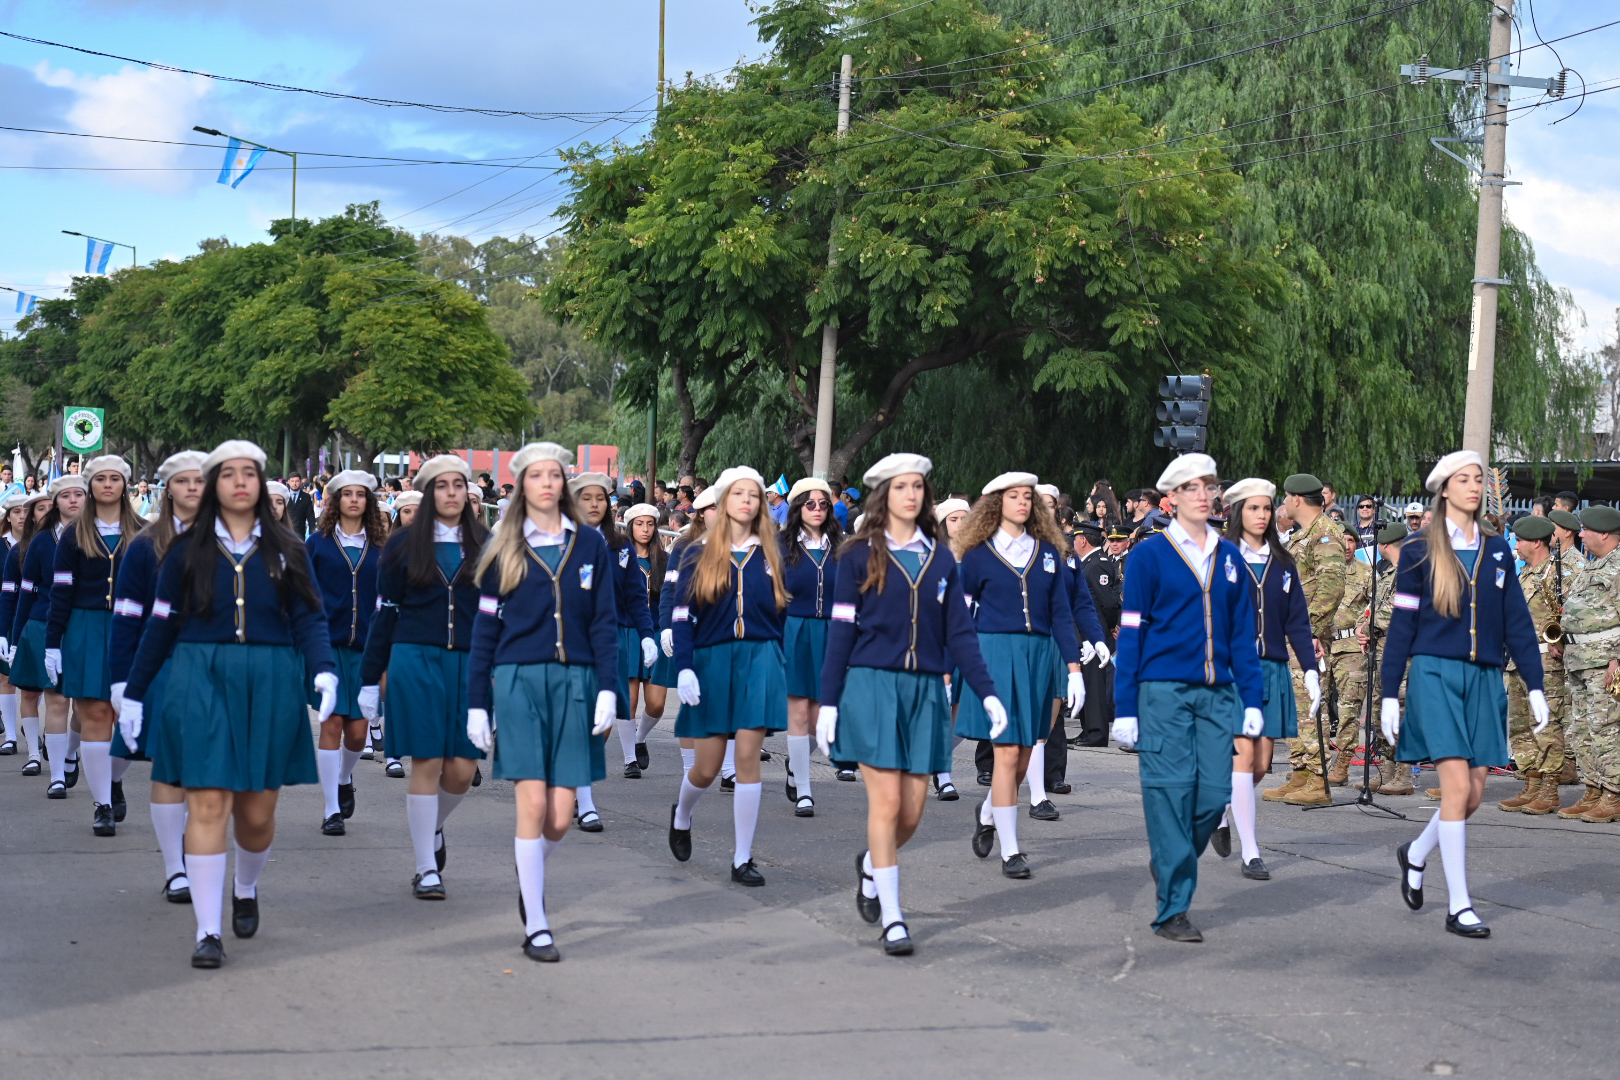 Más de 100 escuelas de la ciudad participarán en el desfile del 25 de Mayo